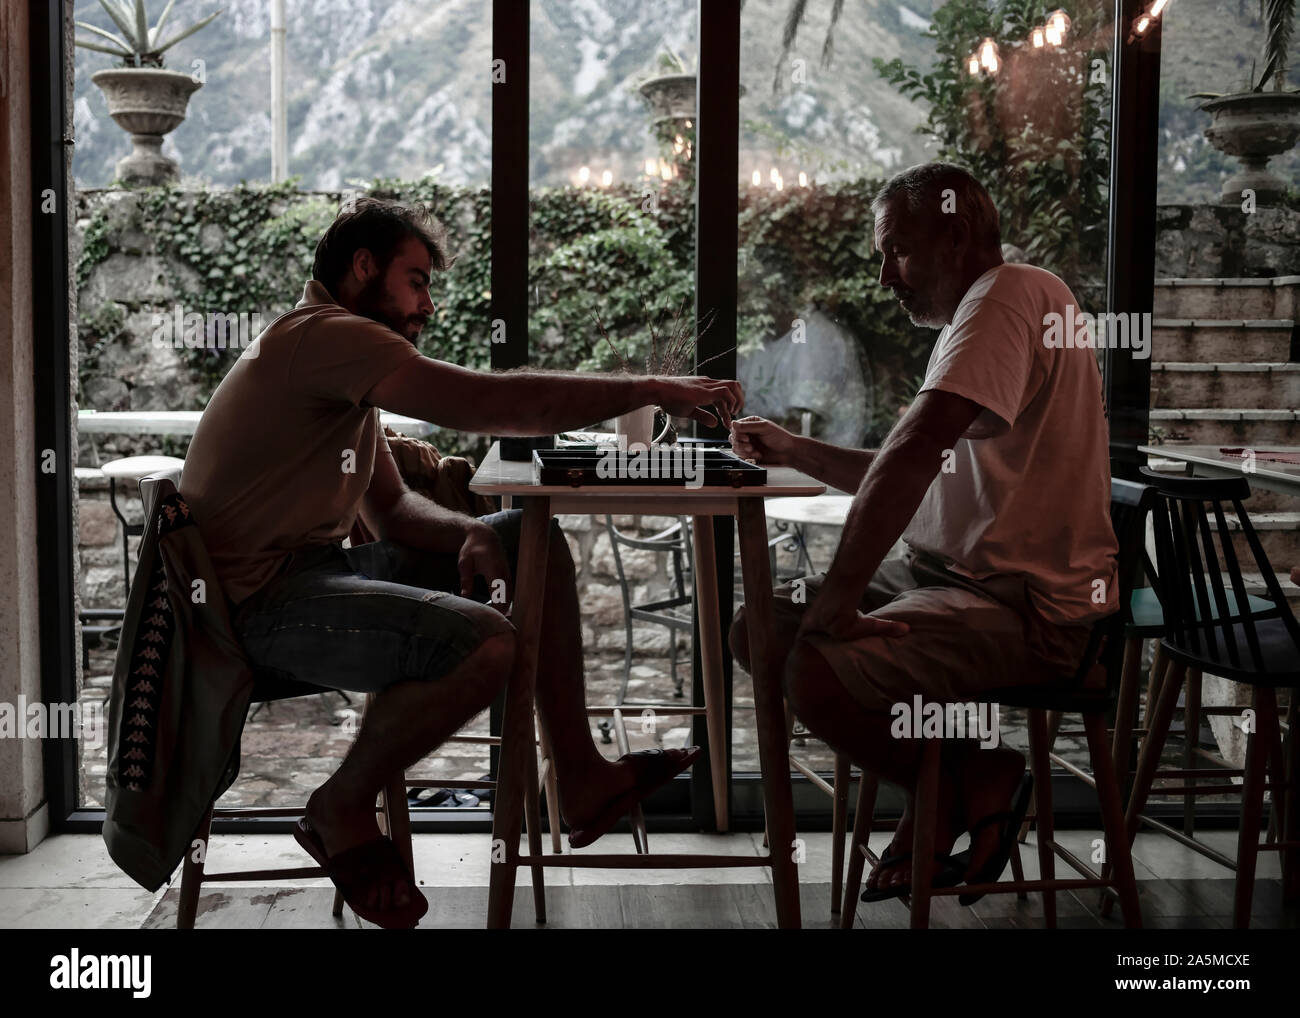 Dobrota, Monténégro, 19 sept., 2019 : Père et fils jouant au backgammon au café Banque D'Images